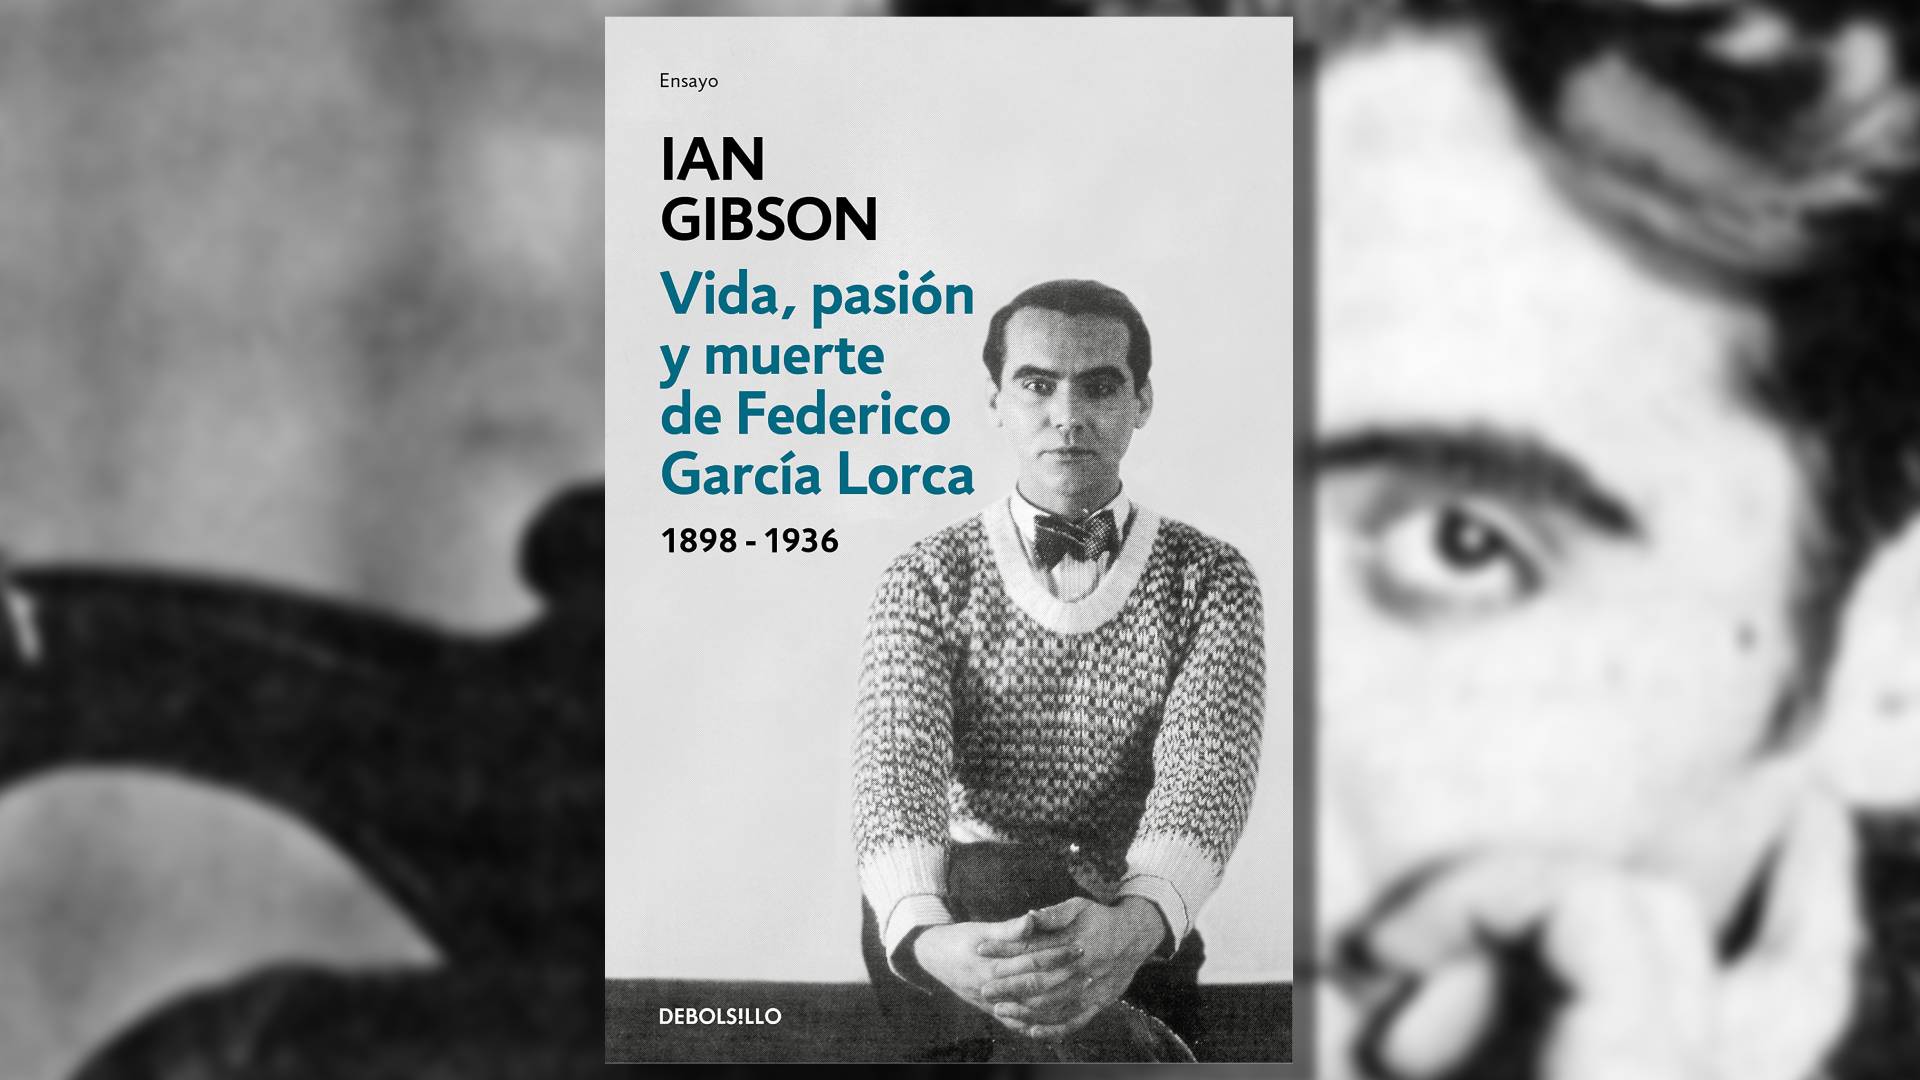 "Vida, pasión y muerte de Federico García Lorca" fue publicada por Ian Gibson en 1998.